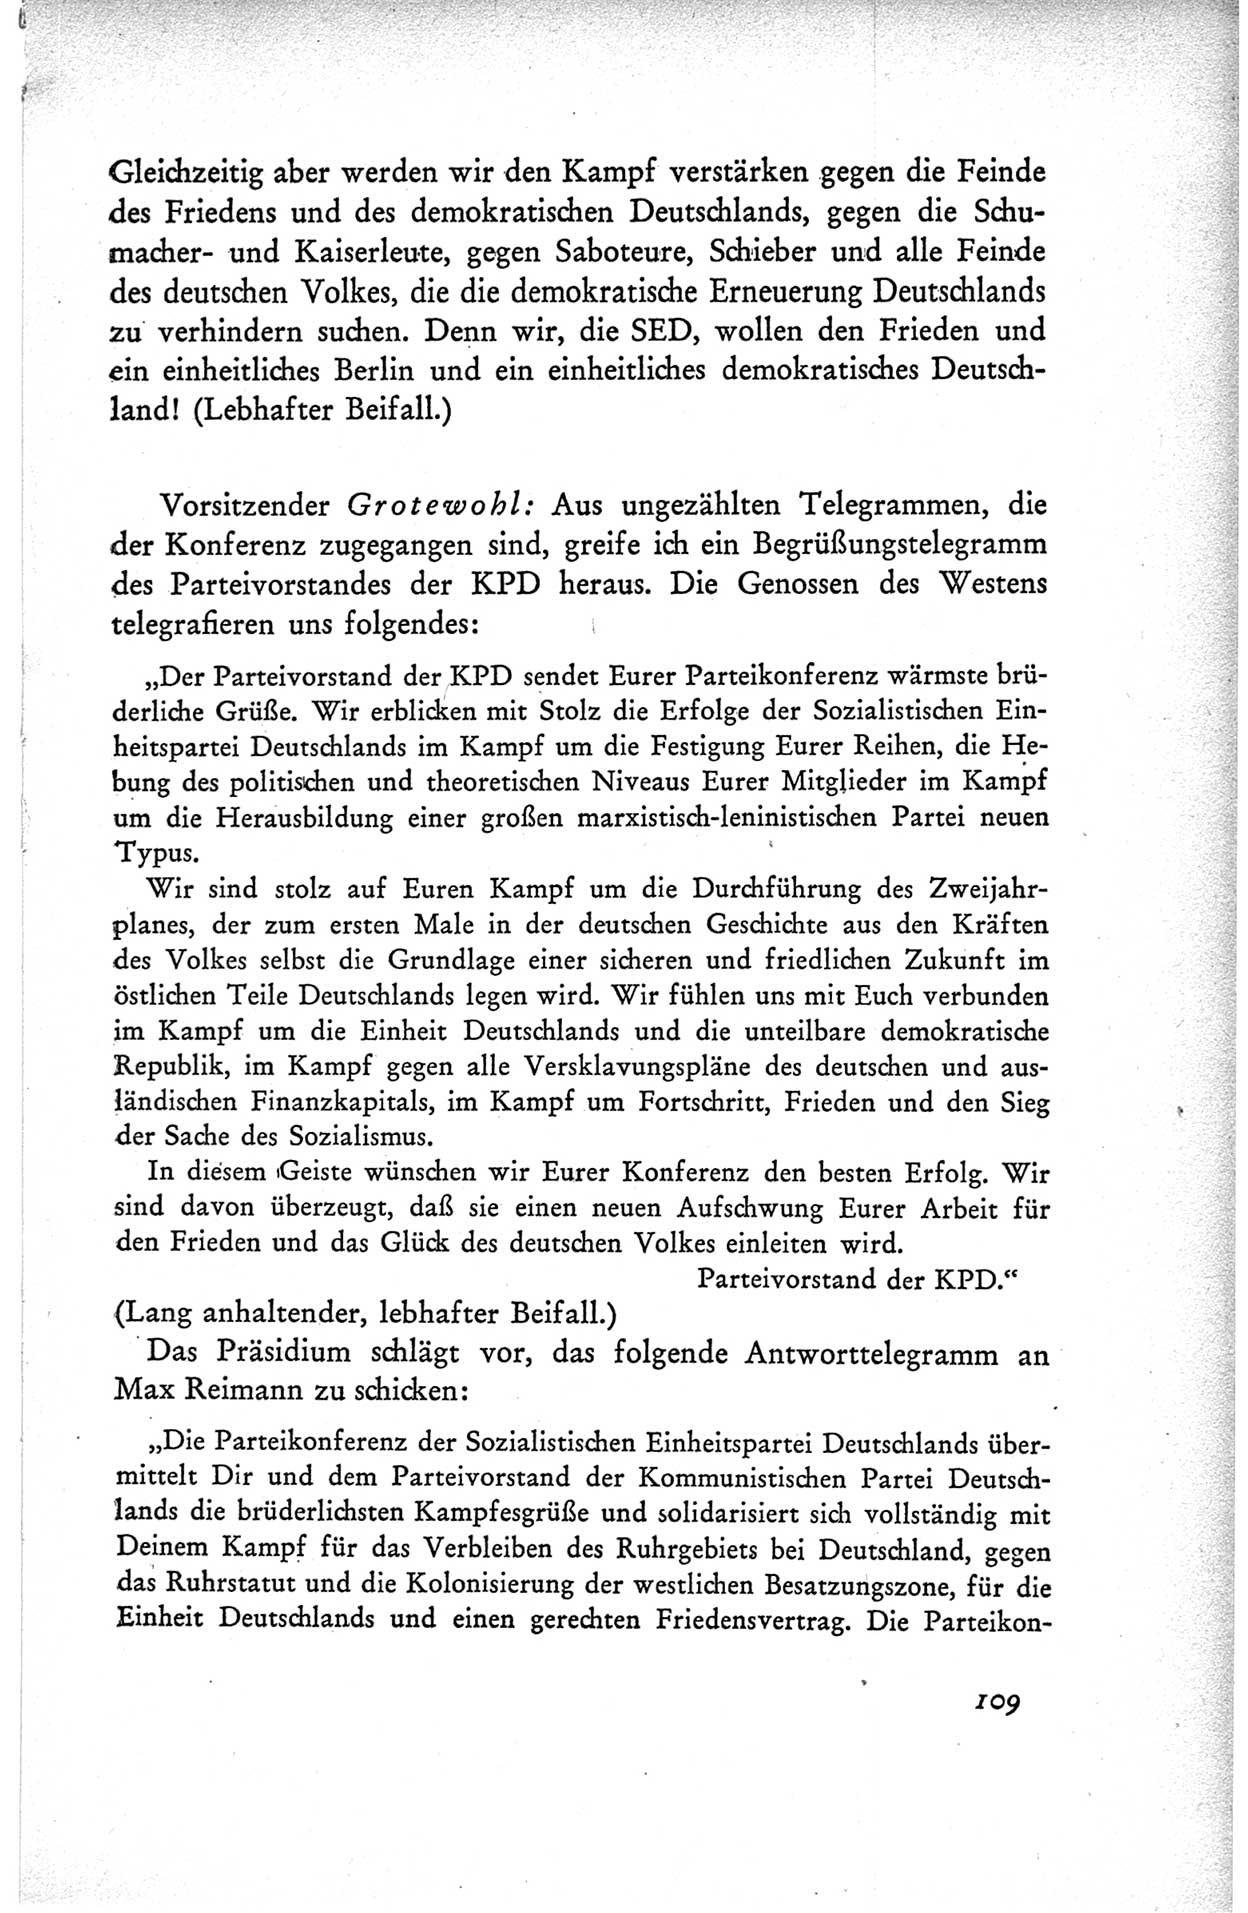 Protokoll der ersten Parteikonferenz der Sozialistischen Einheitspartei Deutschlands (SED) [Sowjetische Besatzungszone (SBZ) Deutschlands] vom 25. bis 28. Januar 1949 im Hause der Deutschen Wirtschaftskommission zu Berlin, Seite 109 (Prot. 1. PK SED SBZ Dtl. 1949, S. 109)